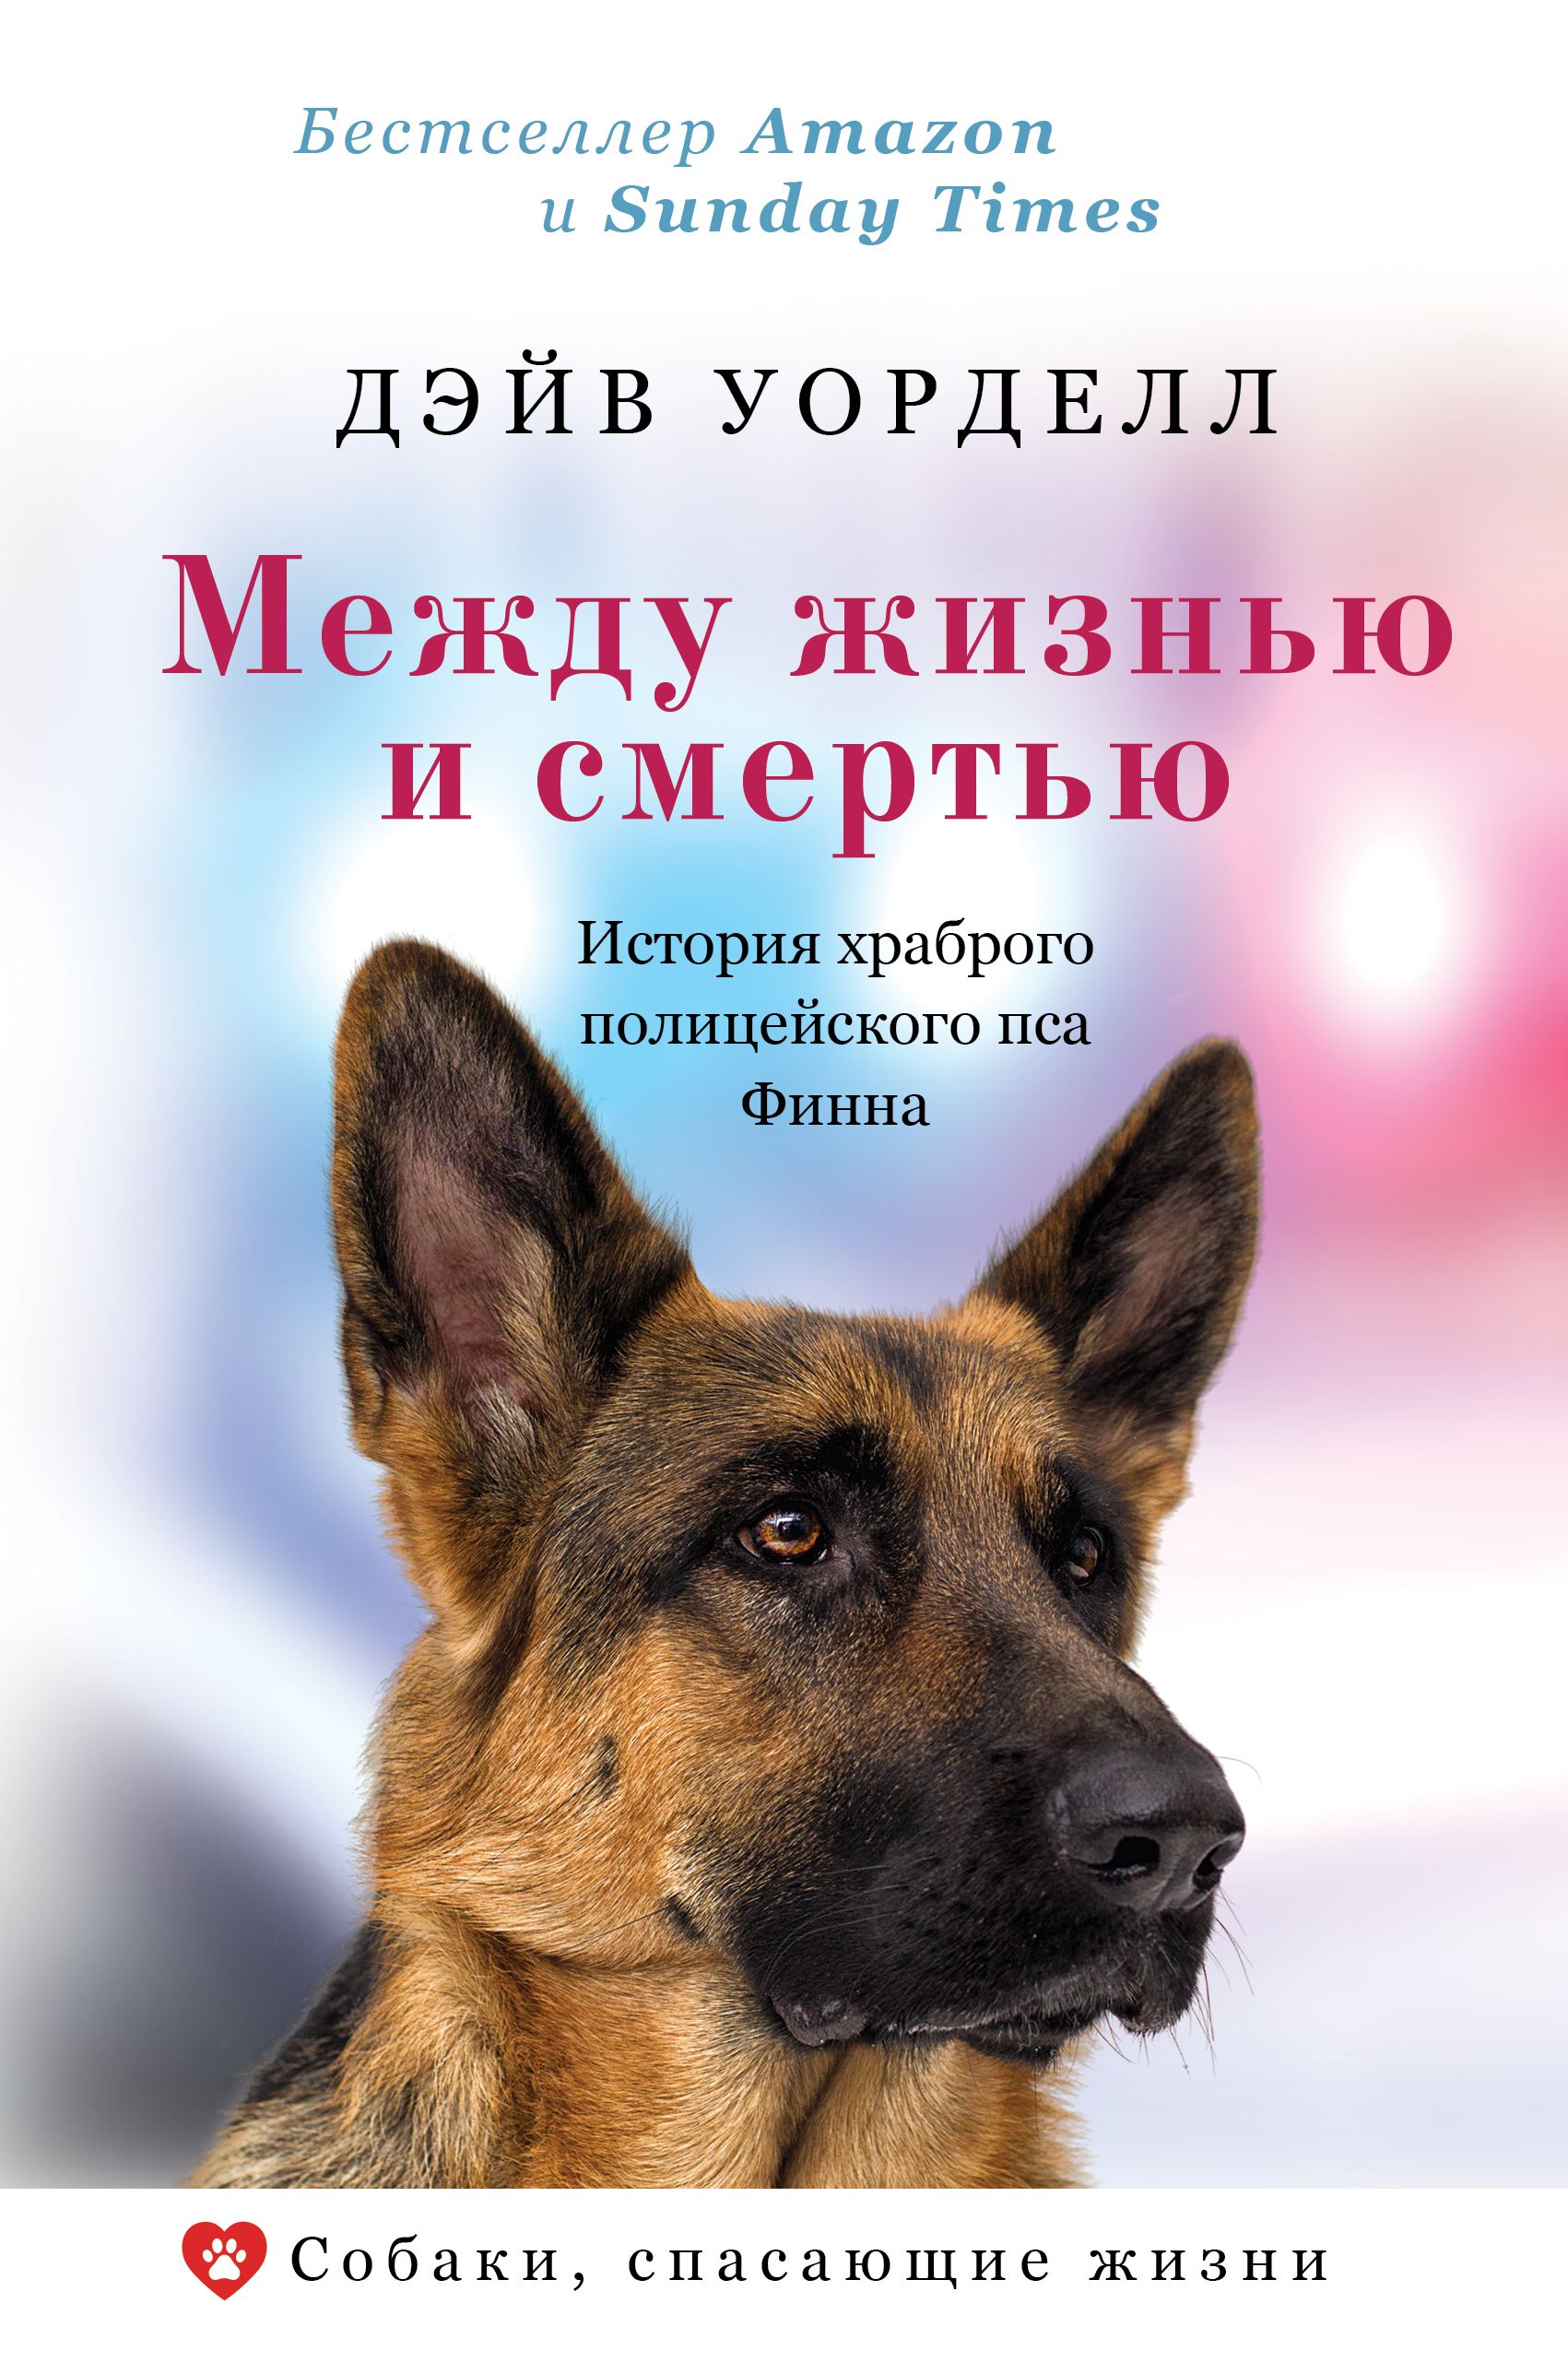 Между жизнью и смертью. История храброго полицейского пса Финна читать онлайн